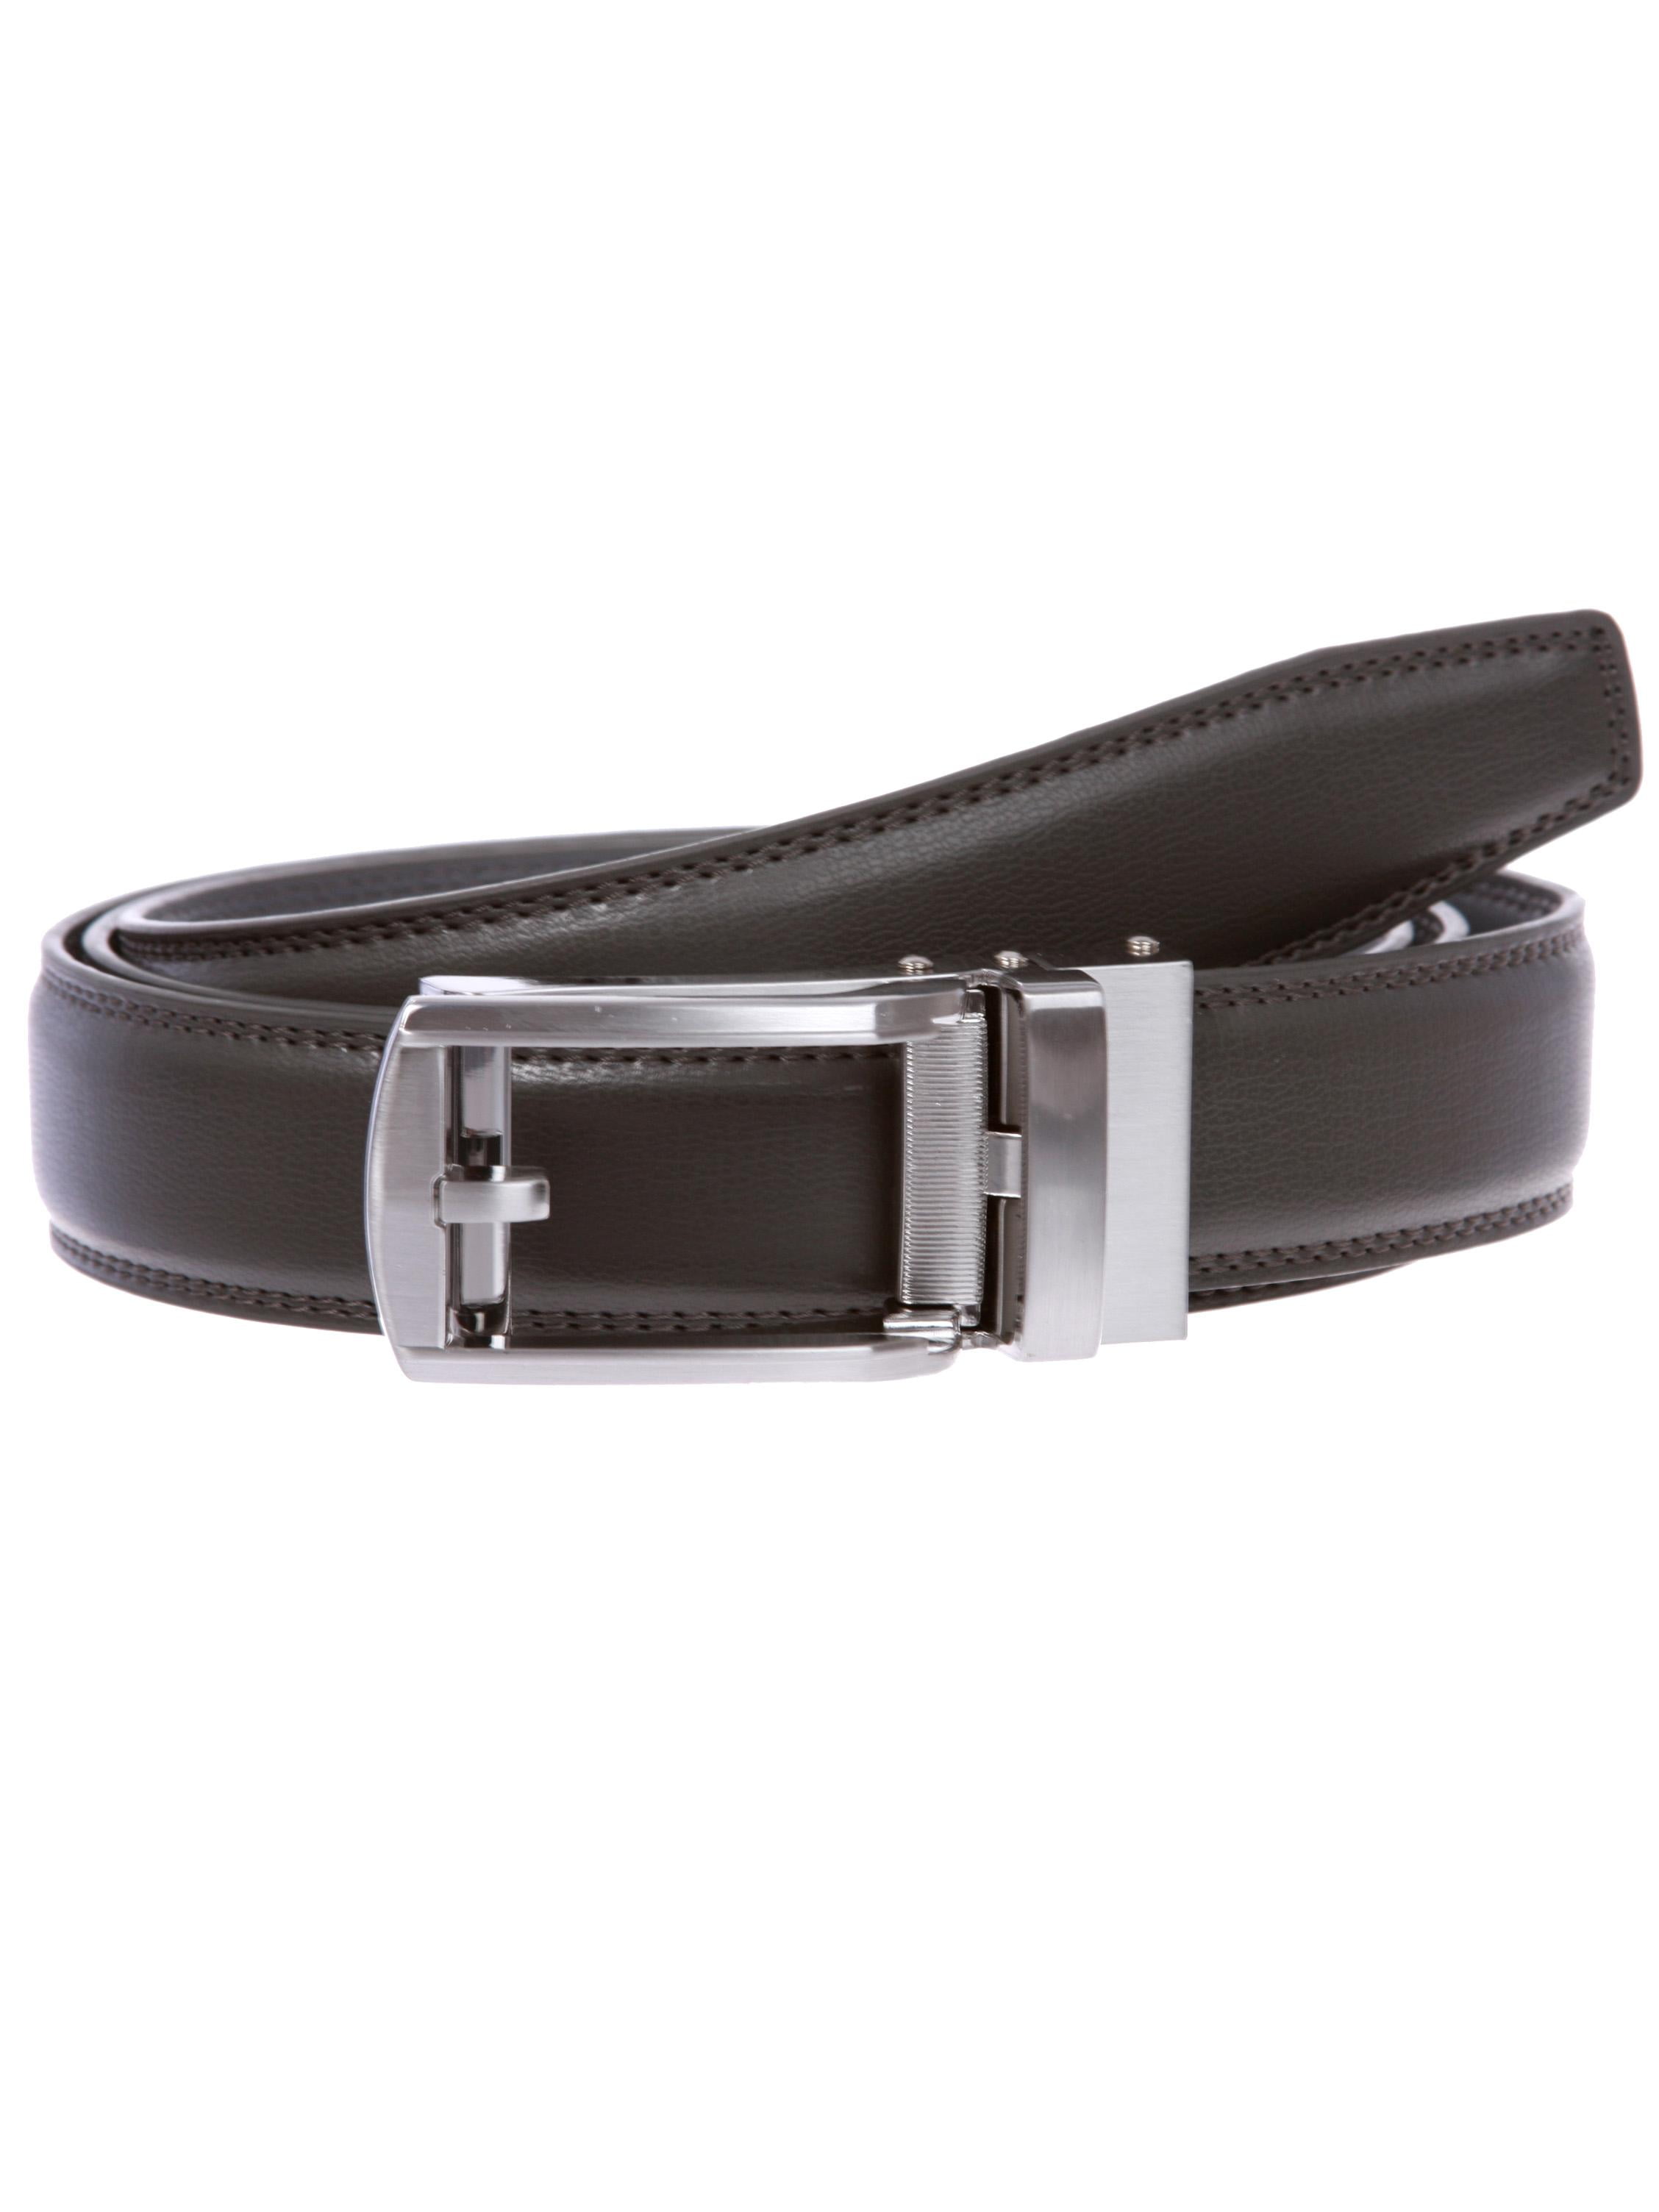 Men's Microfiber Adjustable Automatic Ratchet Slide Perfect Fit Belt ...